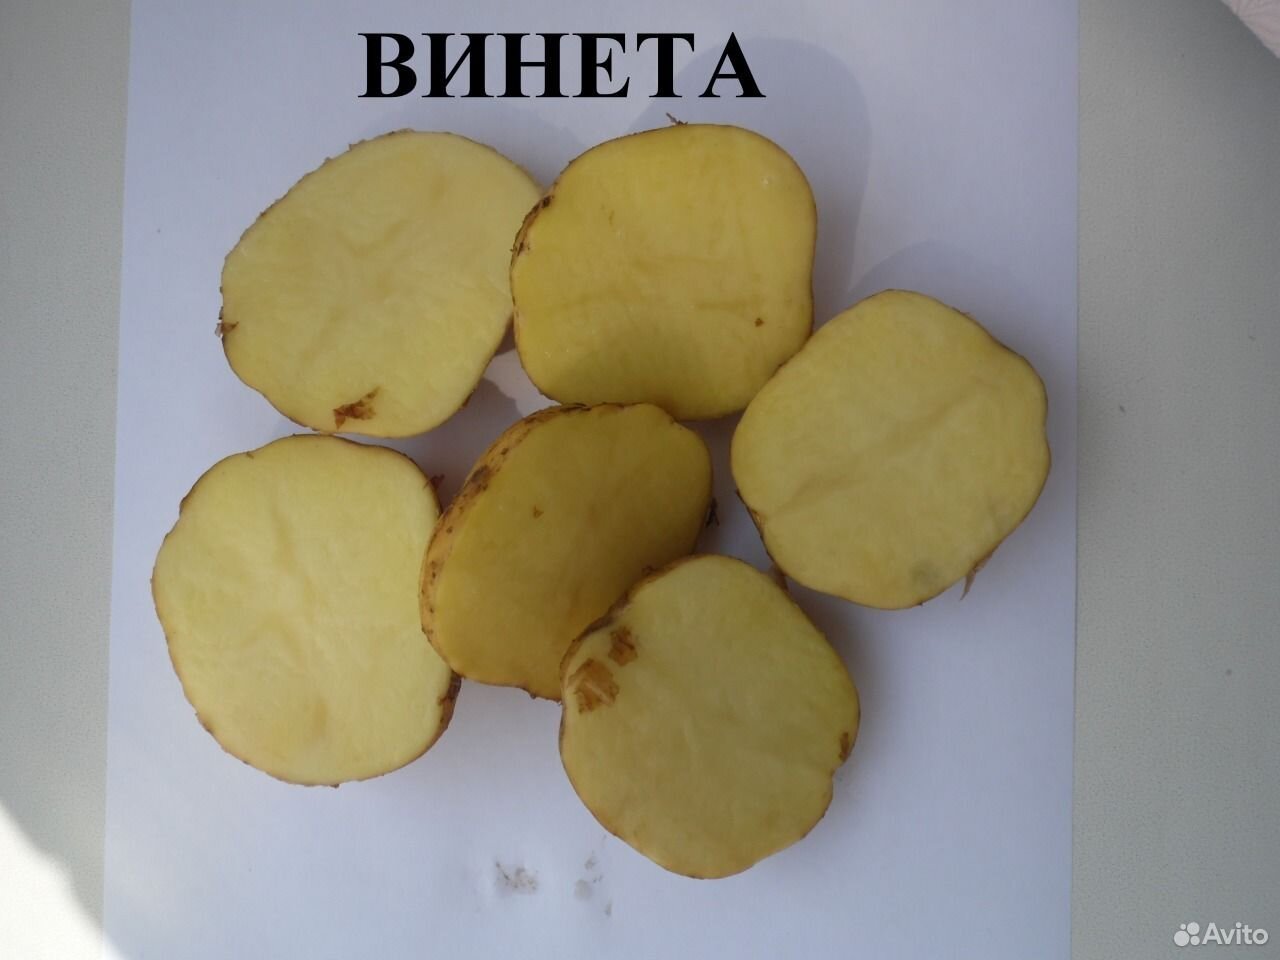 Винета сорт картофеля характеристика